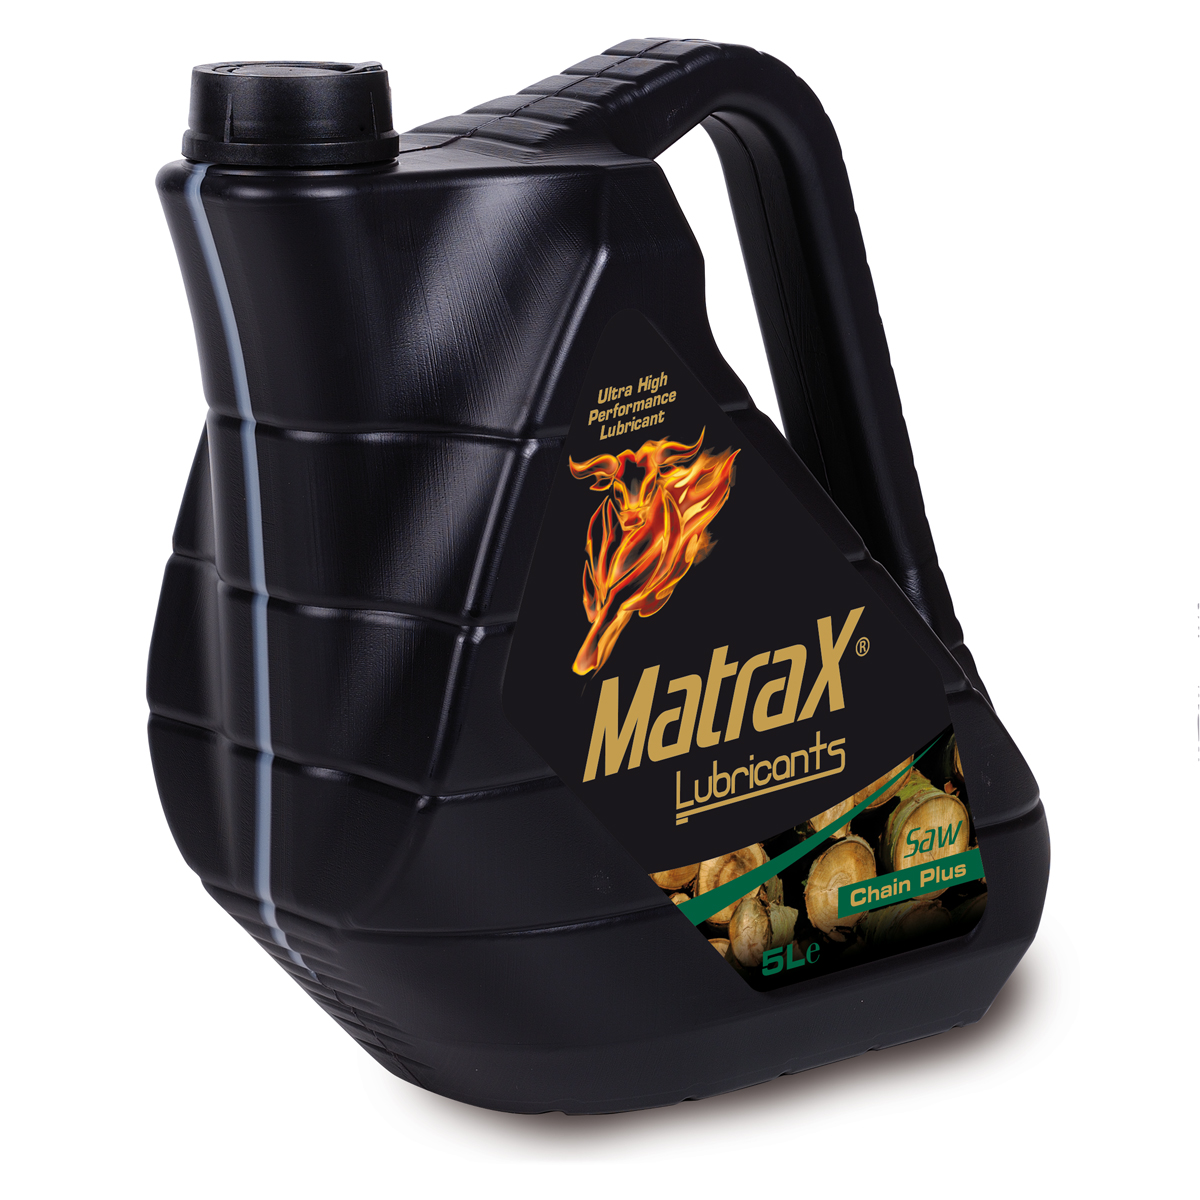 matrax-lubricants-saw-chain-plus-5l